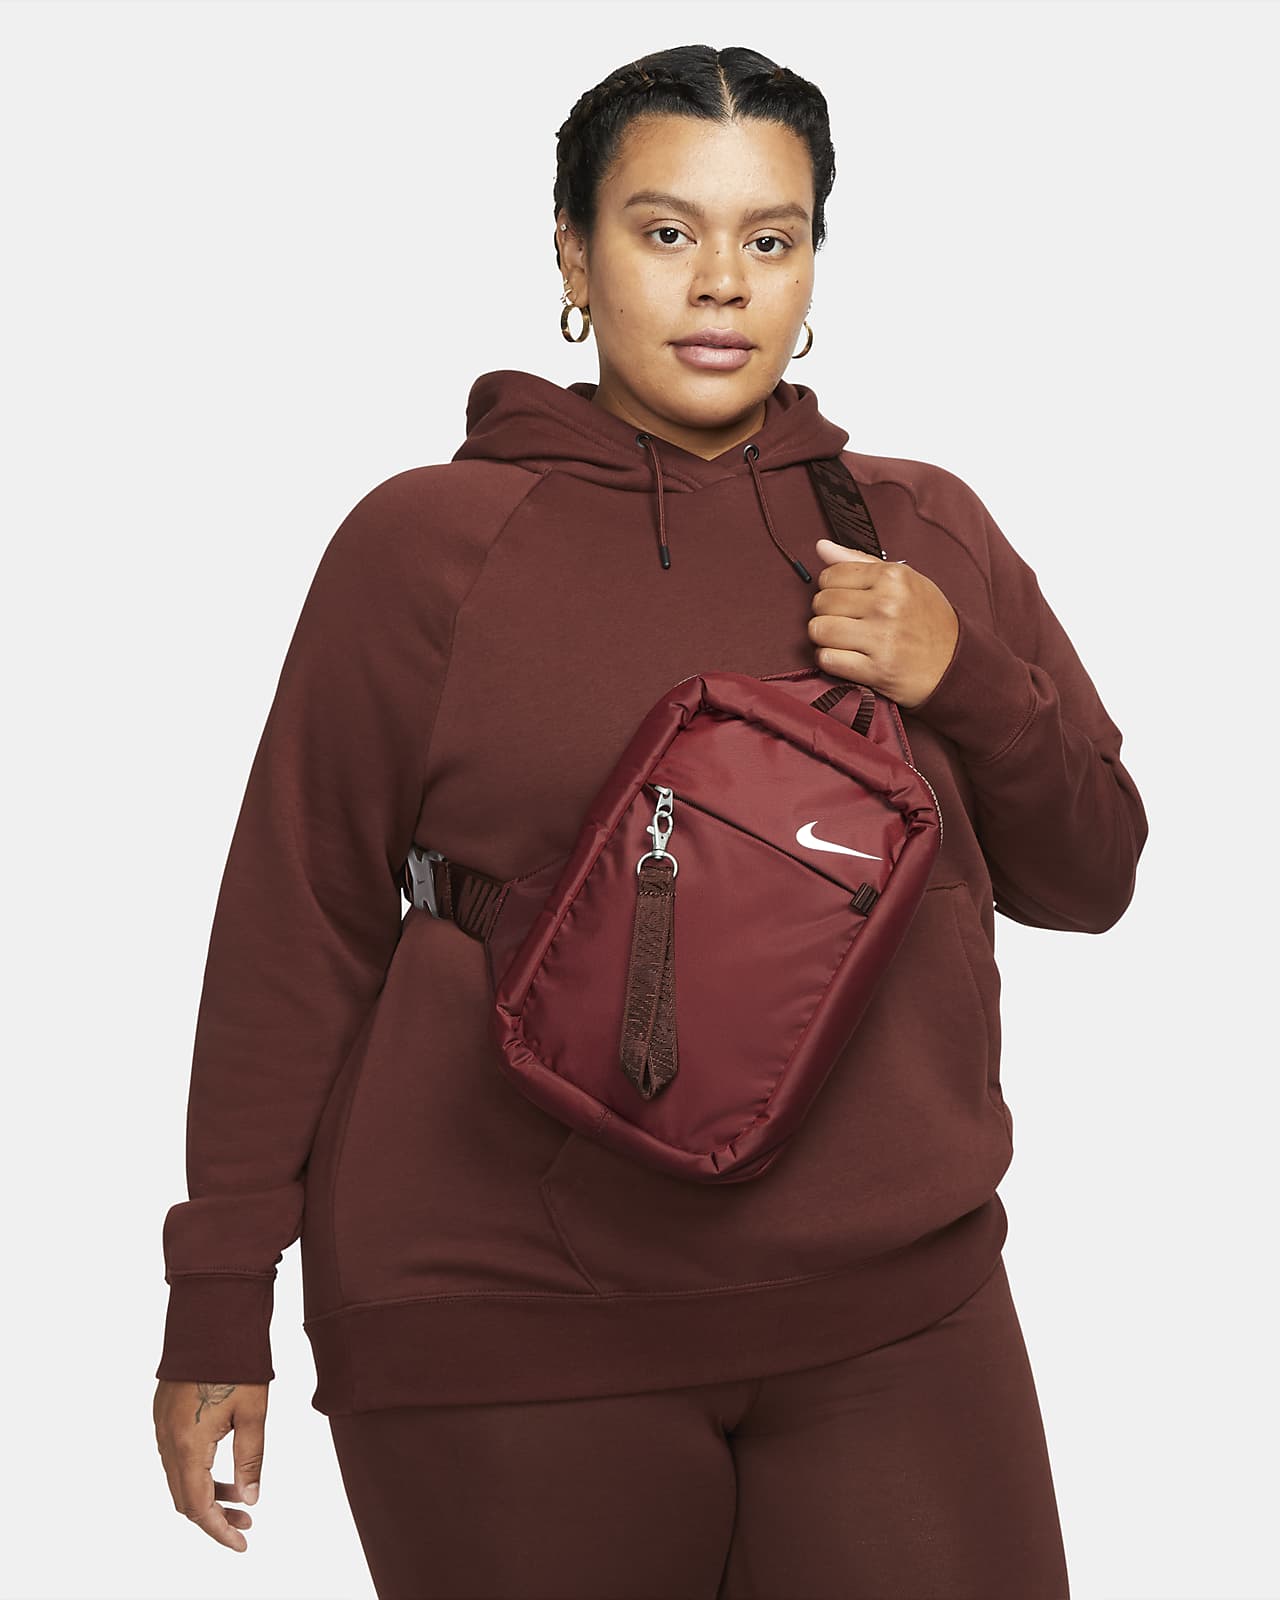 Nike Sportswear Essentials Crossbody Bag